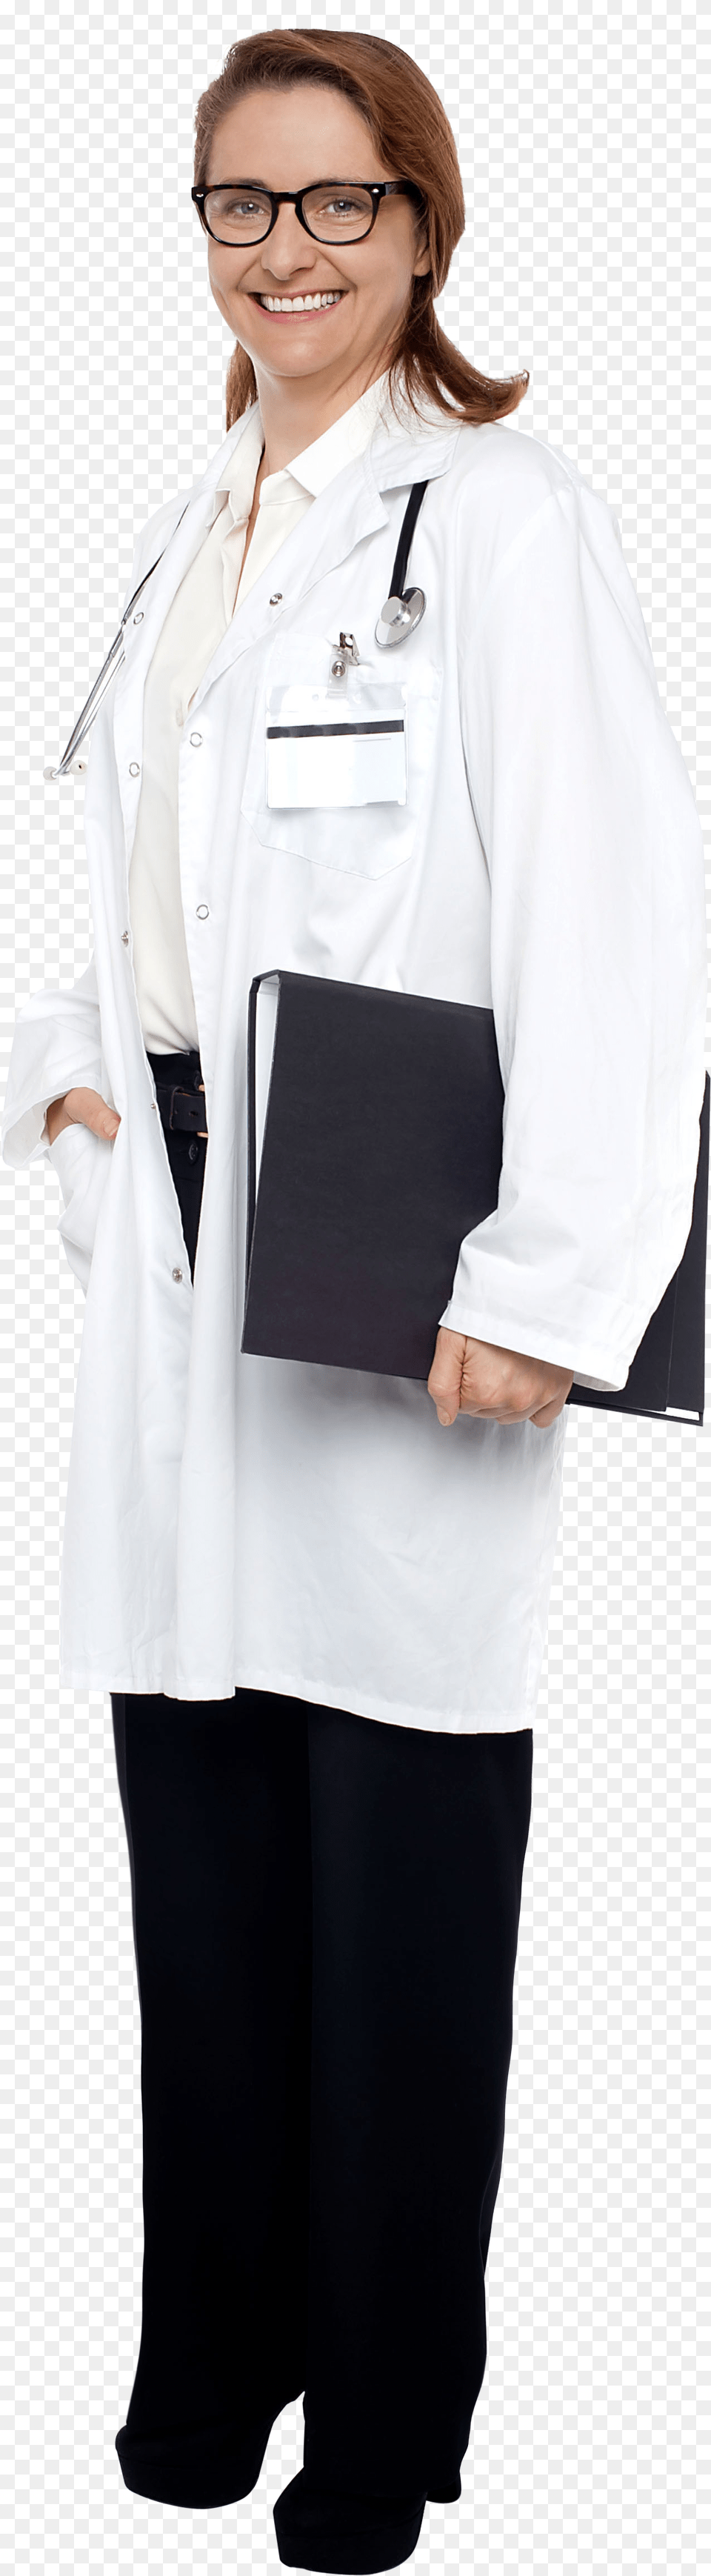 Female Doctor Rak Damtma Cihaz, Lab Coat, Sleeve, Clothing, Coat Png Image